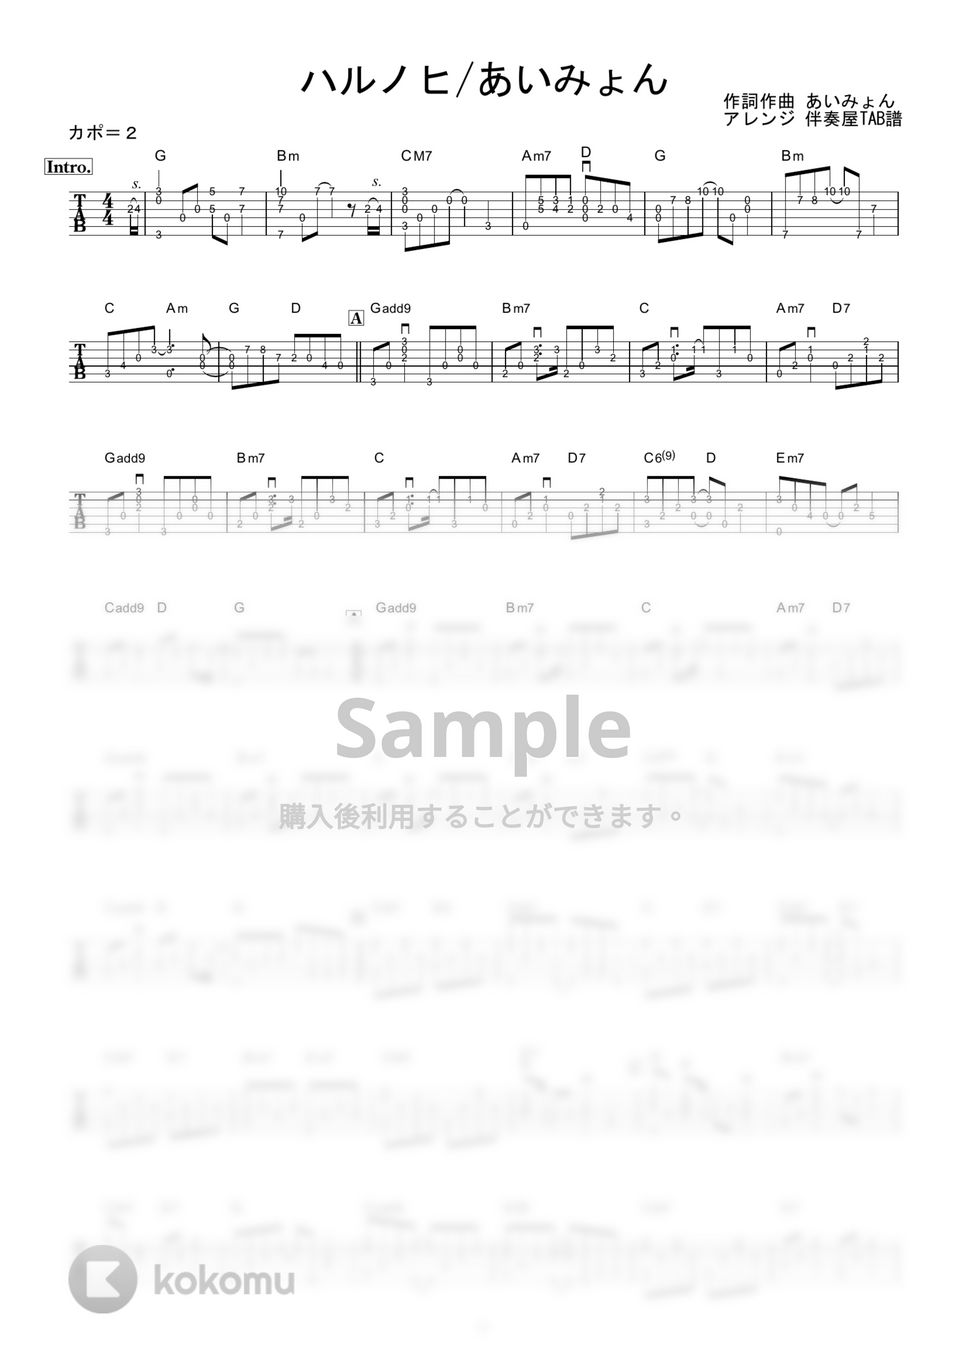 あいみょん - ハルノヒ (ギター伴奏/イントロ・間奏ソロギター) by 伴奏屋TAB譜